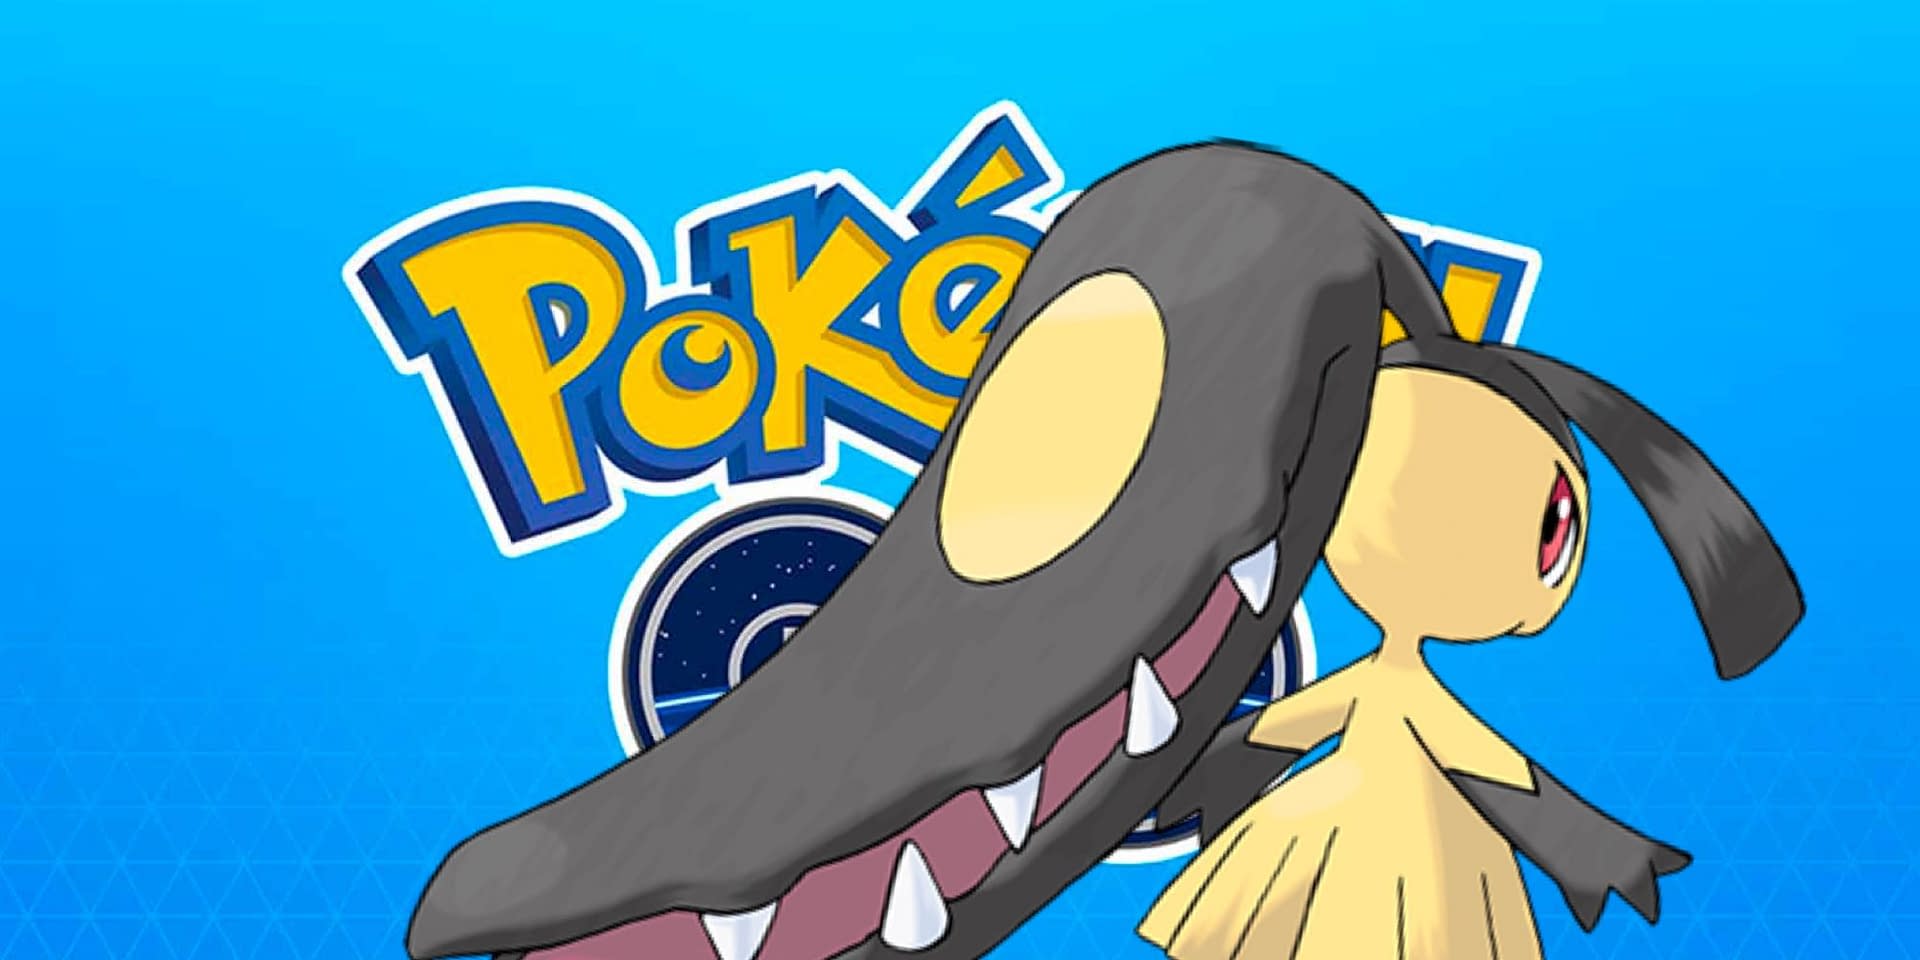 SOLANDO MAWILE, SERÁ QUE VEIO SHINY? - Pokémon Go